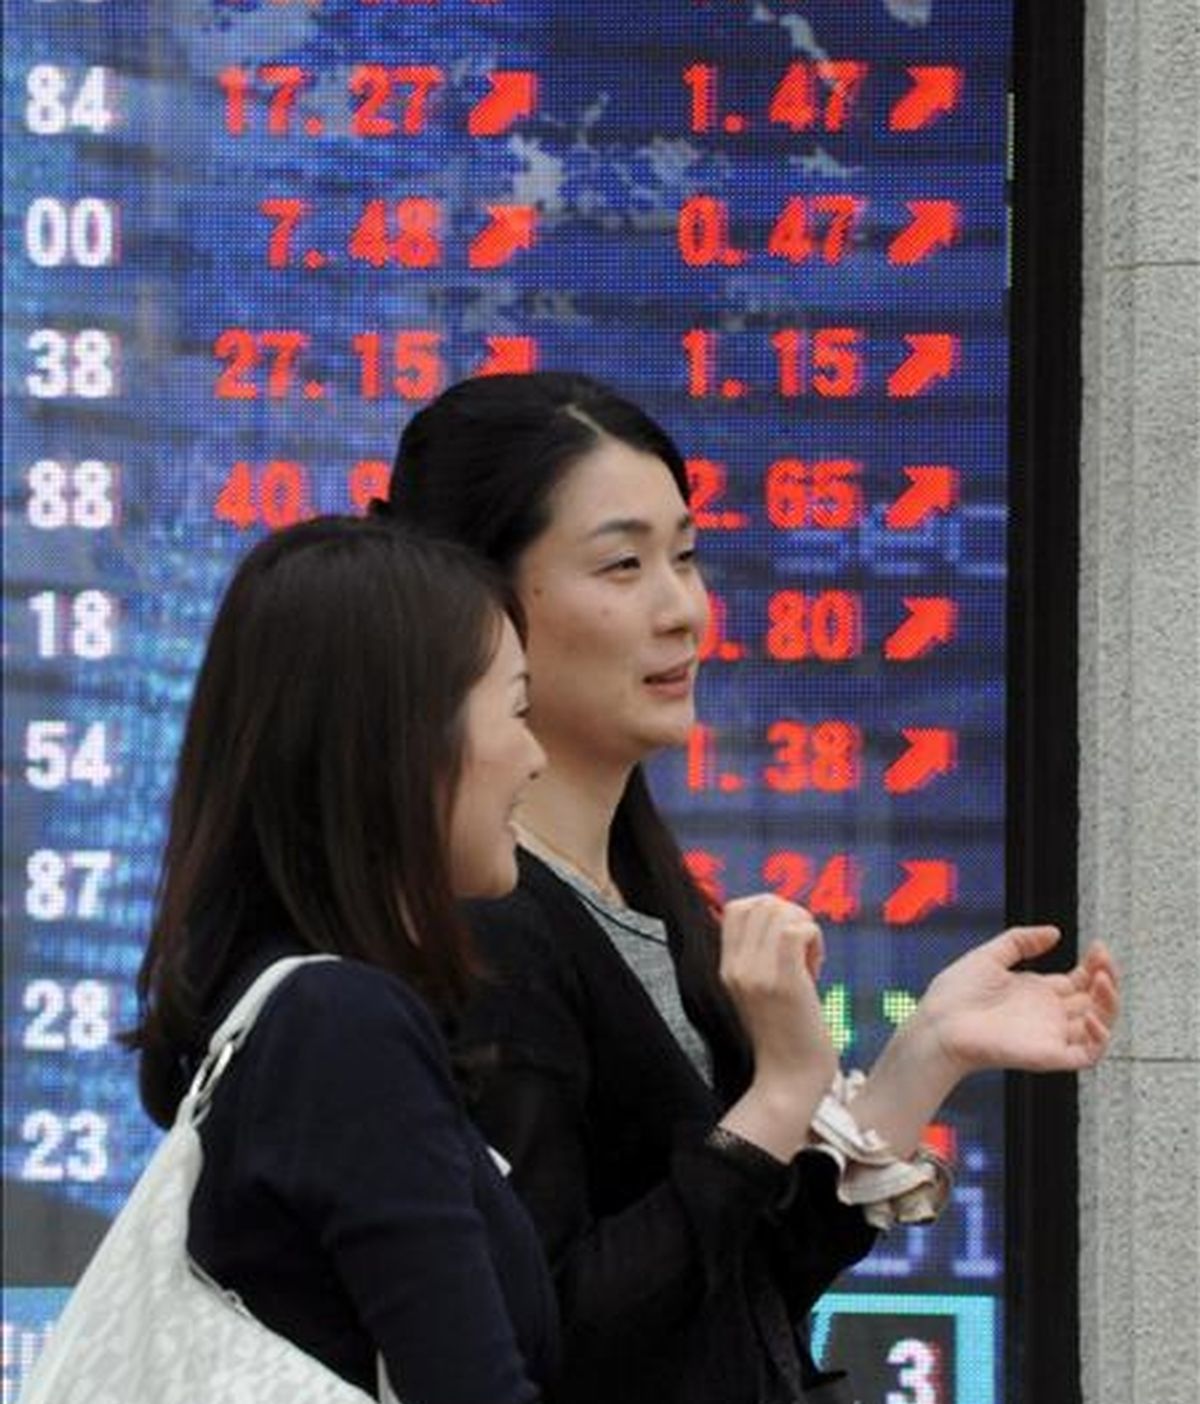 Dos jóvenes pasan una pantalla electrónico con el valor del índice Nikkei, en el centro de Tokio. EFE